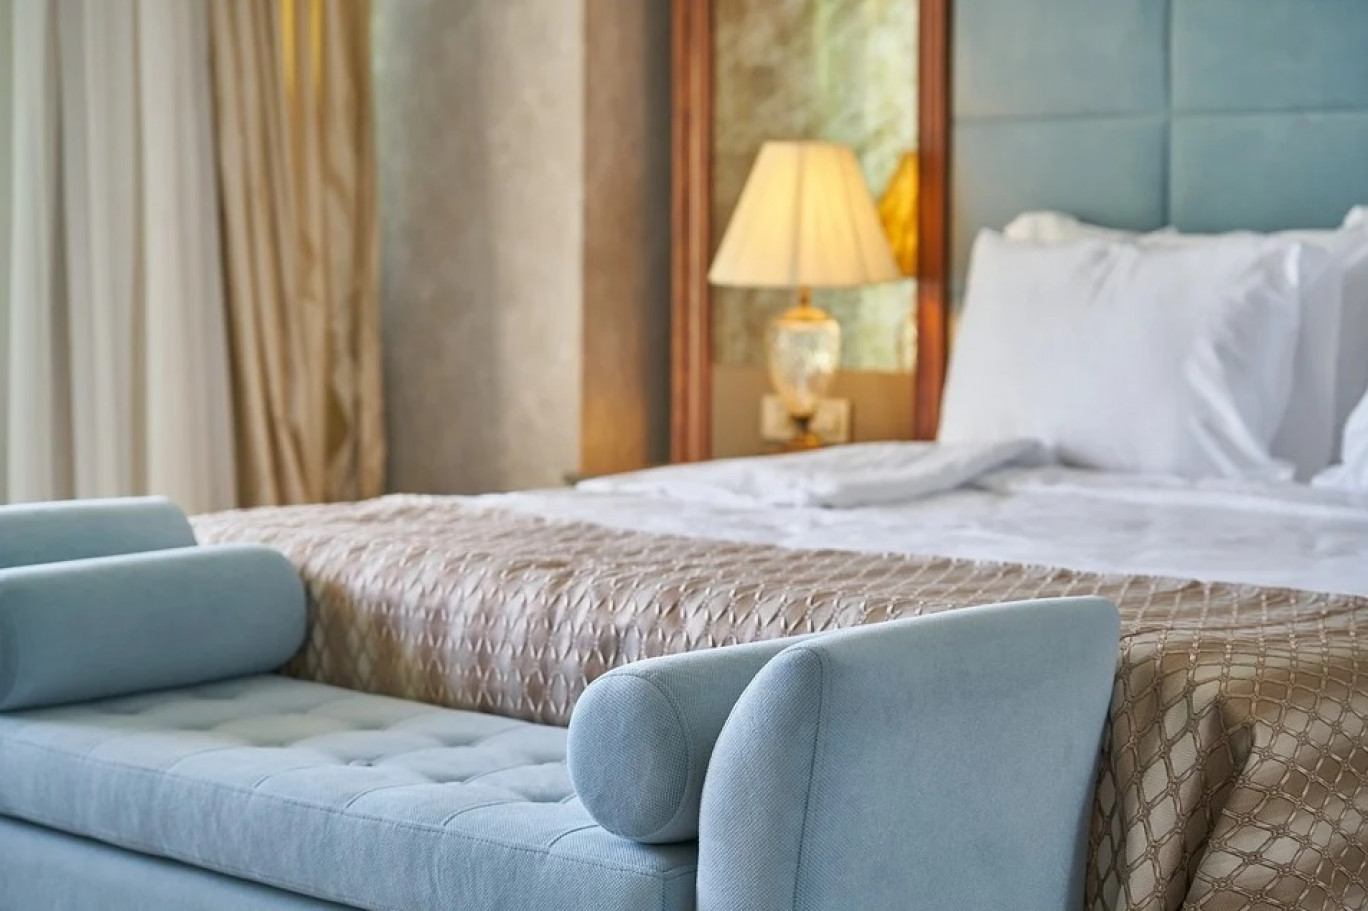 Un hôtel 4 étoiles-spa ouvrira ses portes à Remiremont